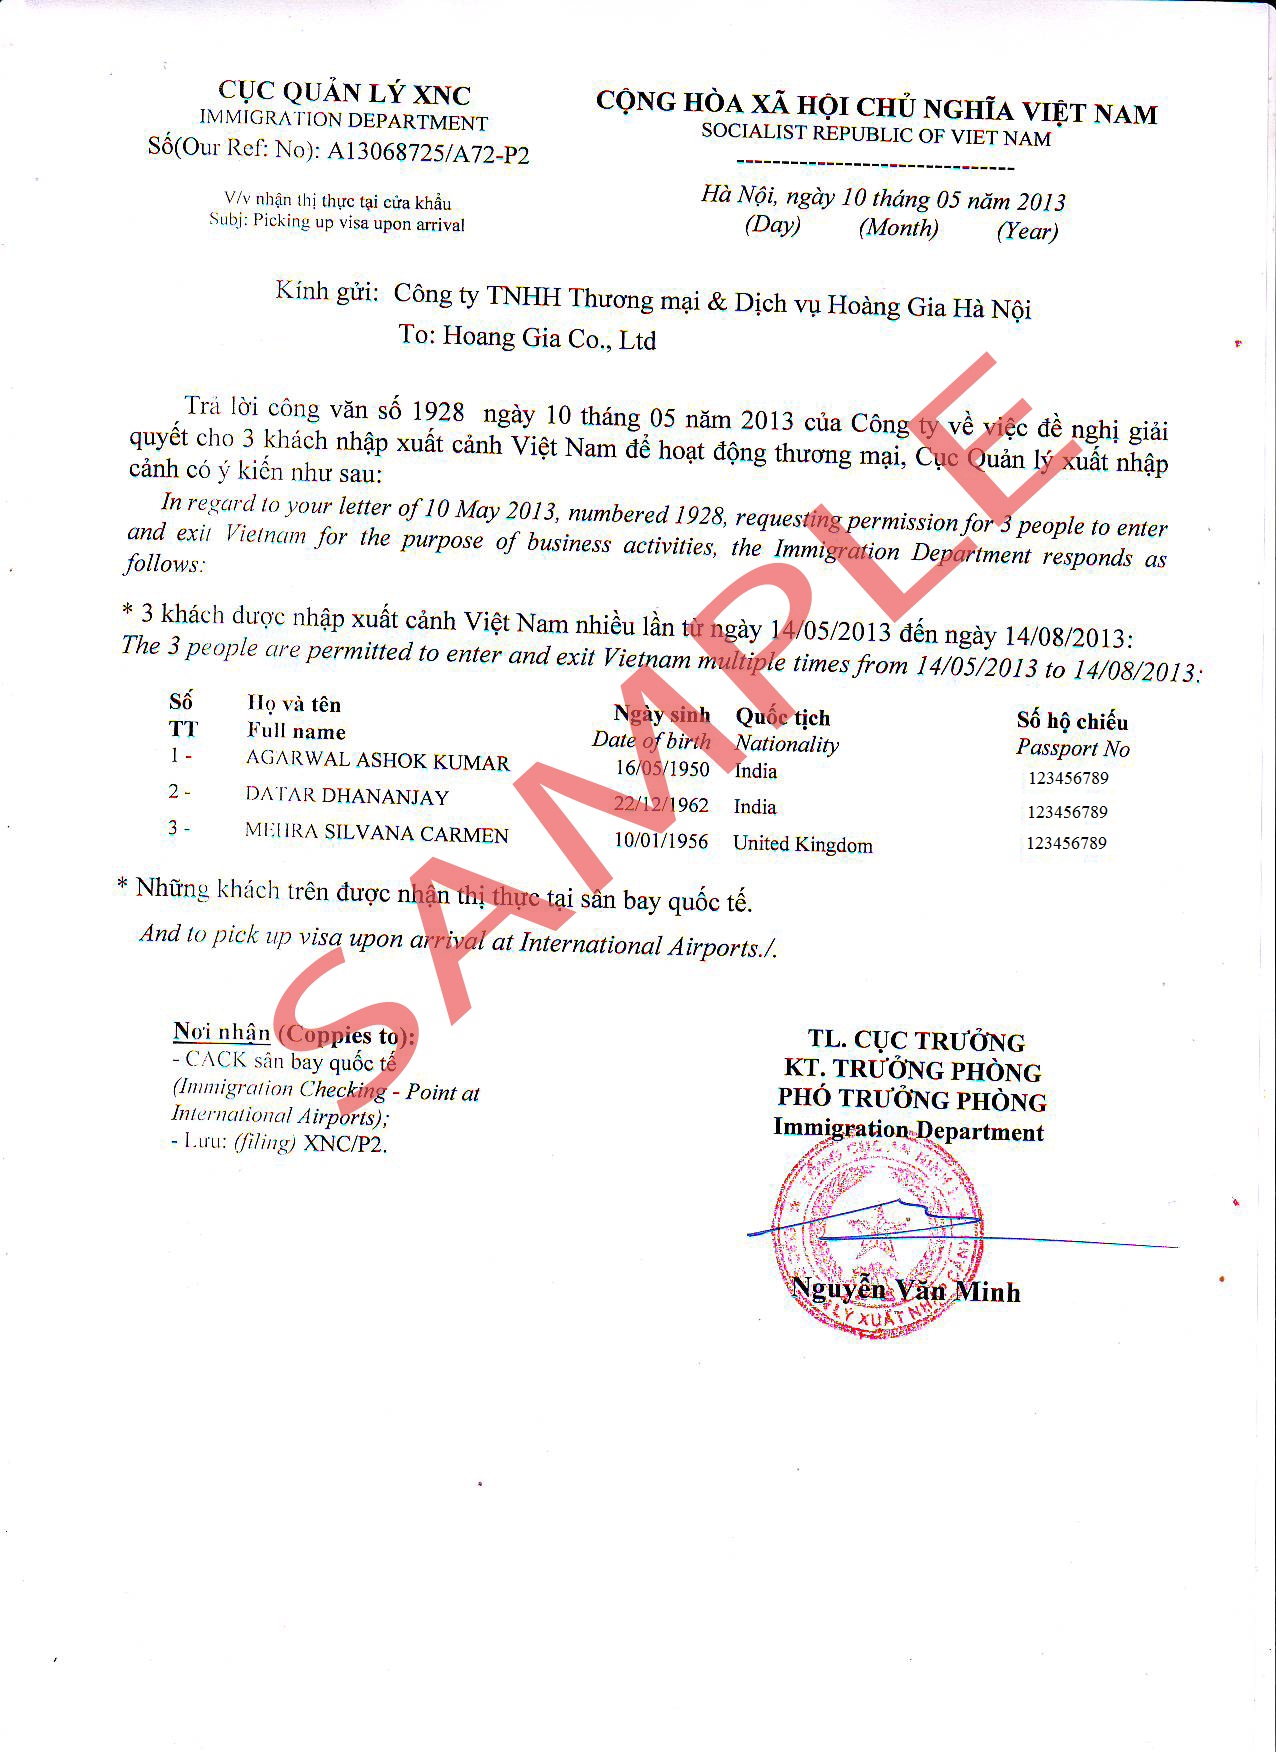 2. Lettera di approvazione del visto per il Vietnam